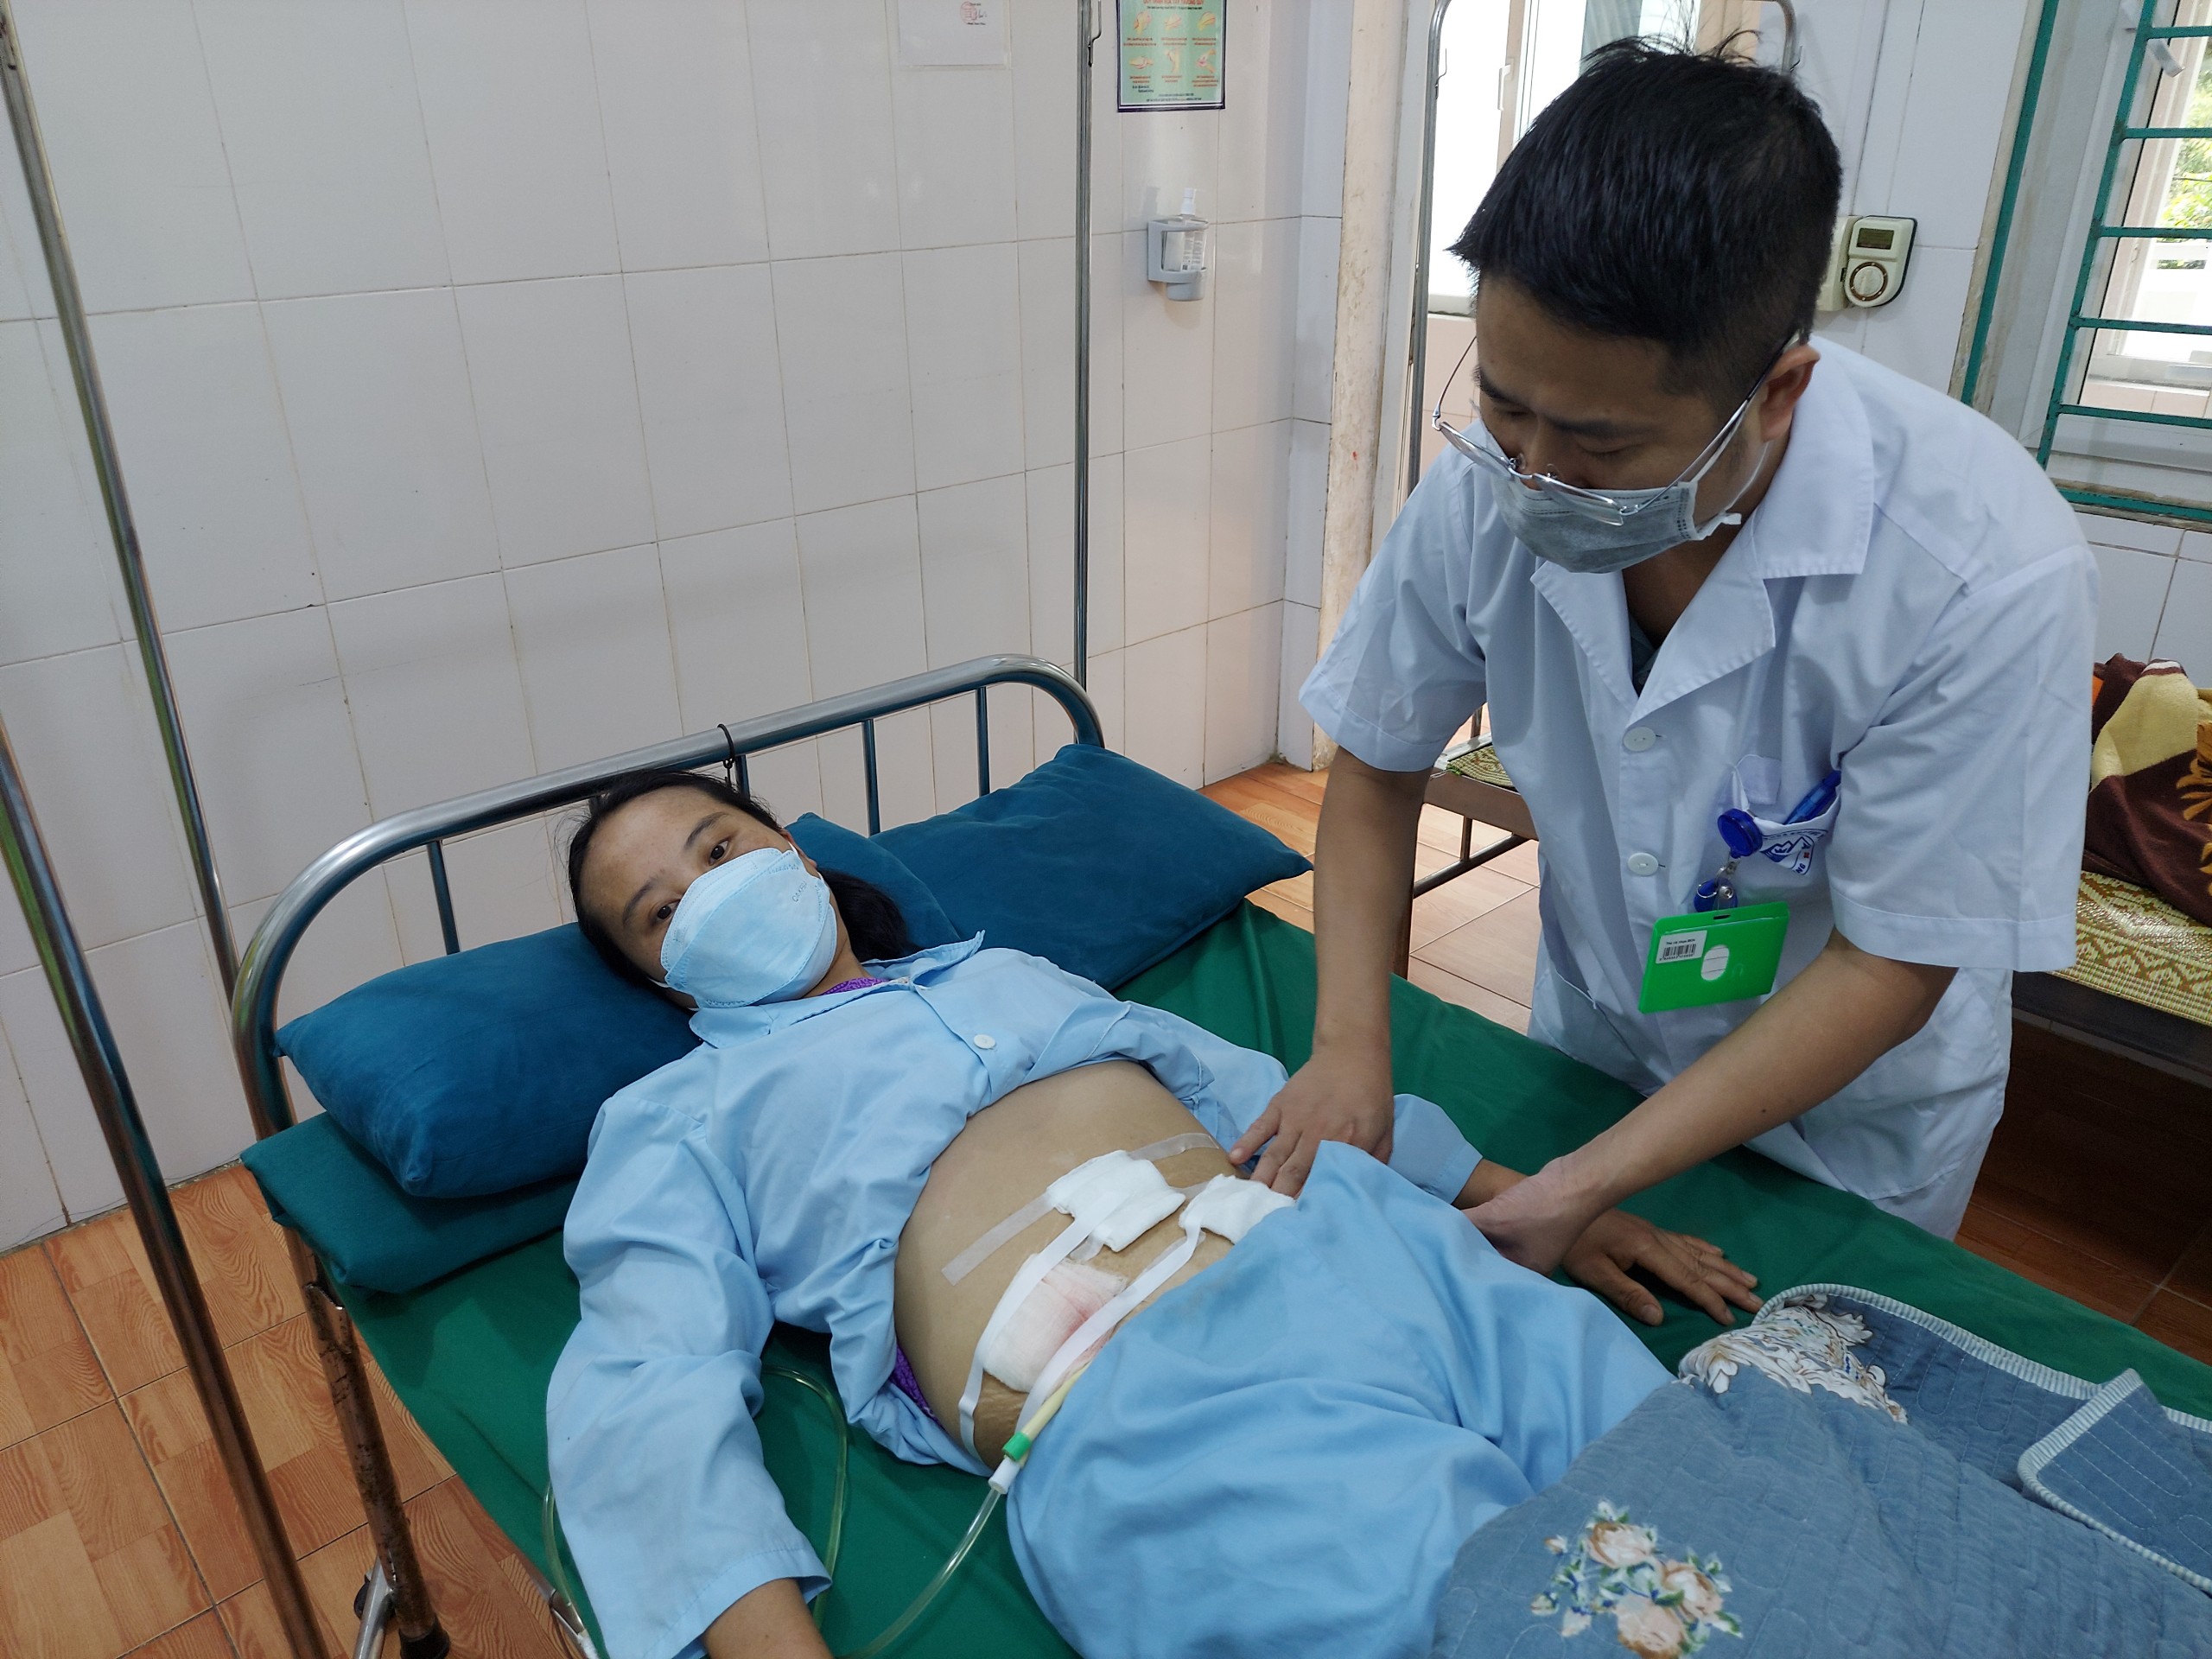 Bệnh viện Đa khoa khu vực Yên Minh phẫu thuật nội soi cấp cứu bệnh nhân vỡ bàng quang